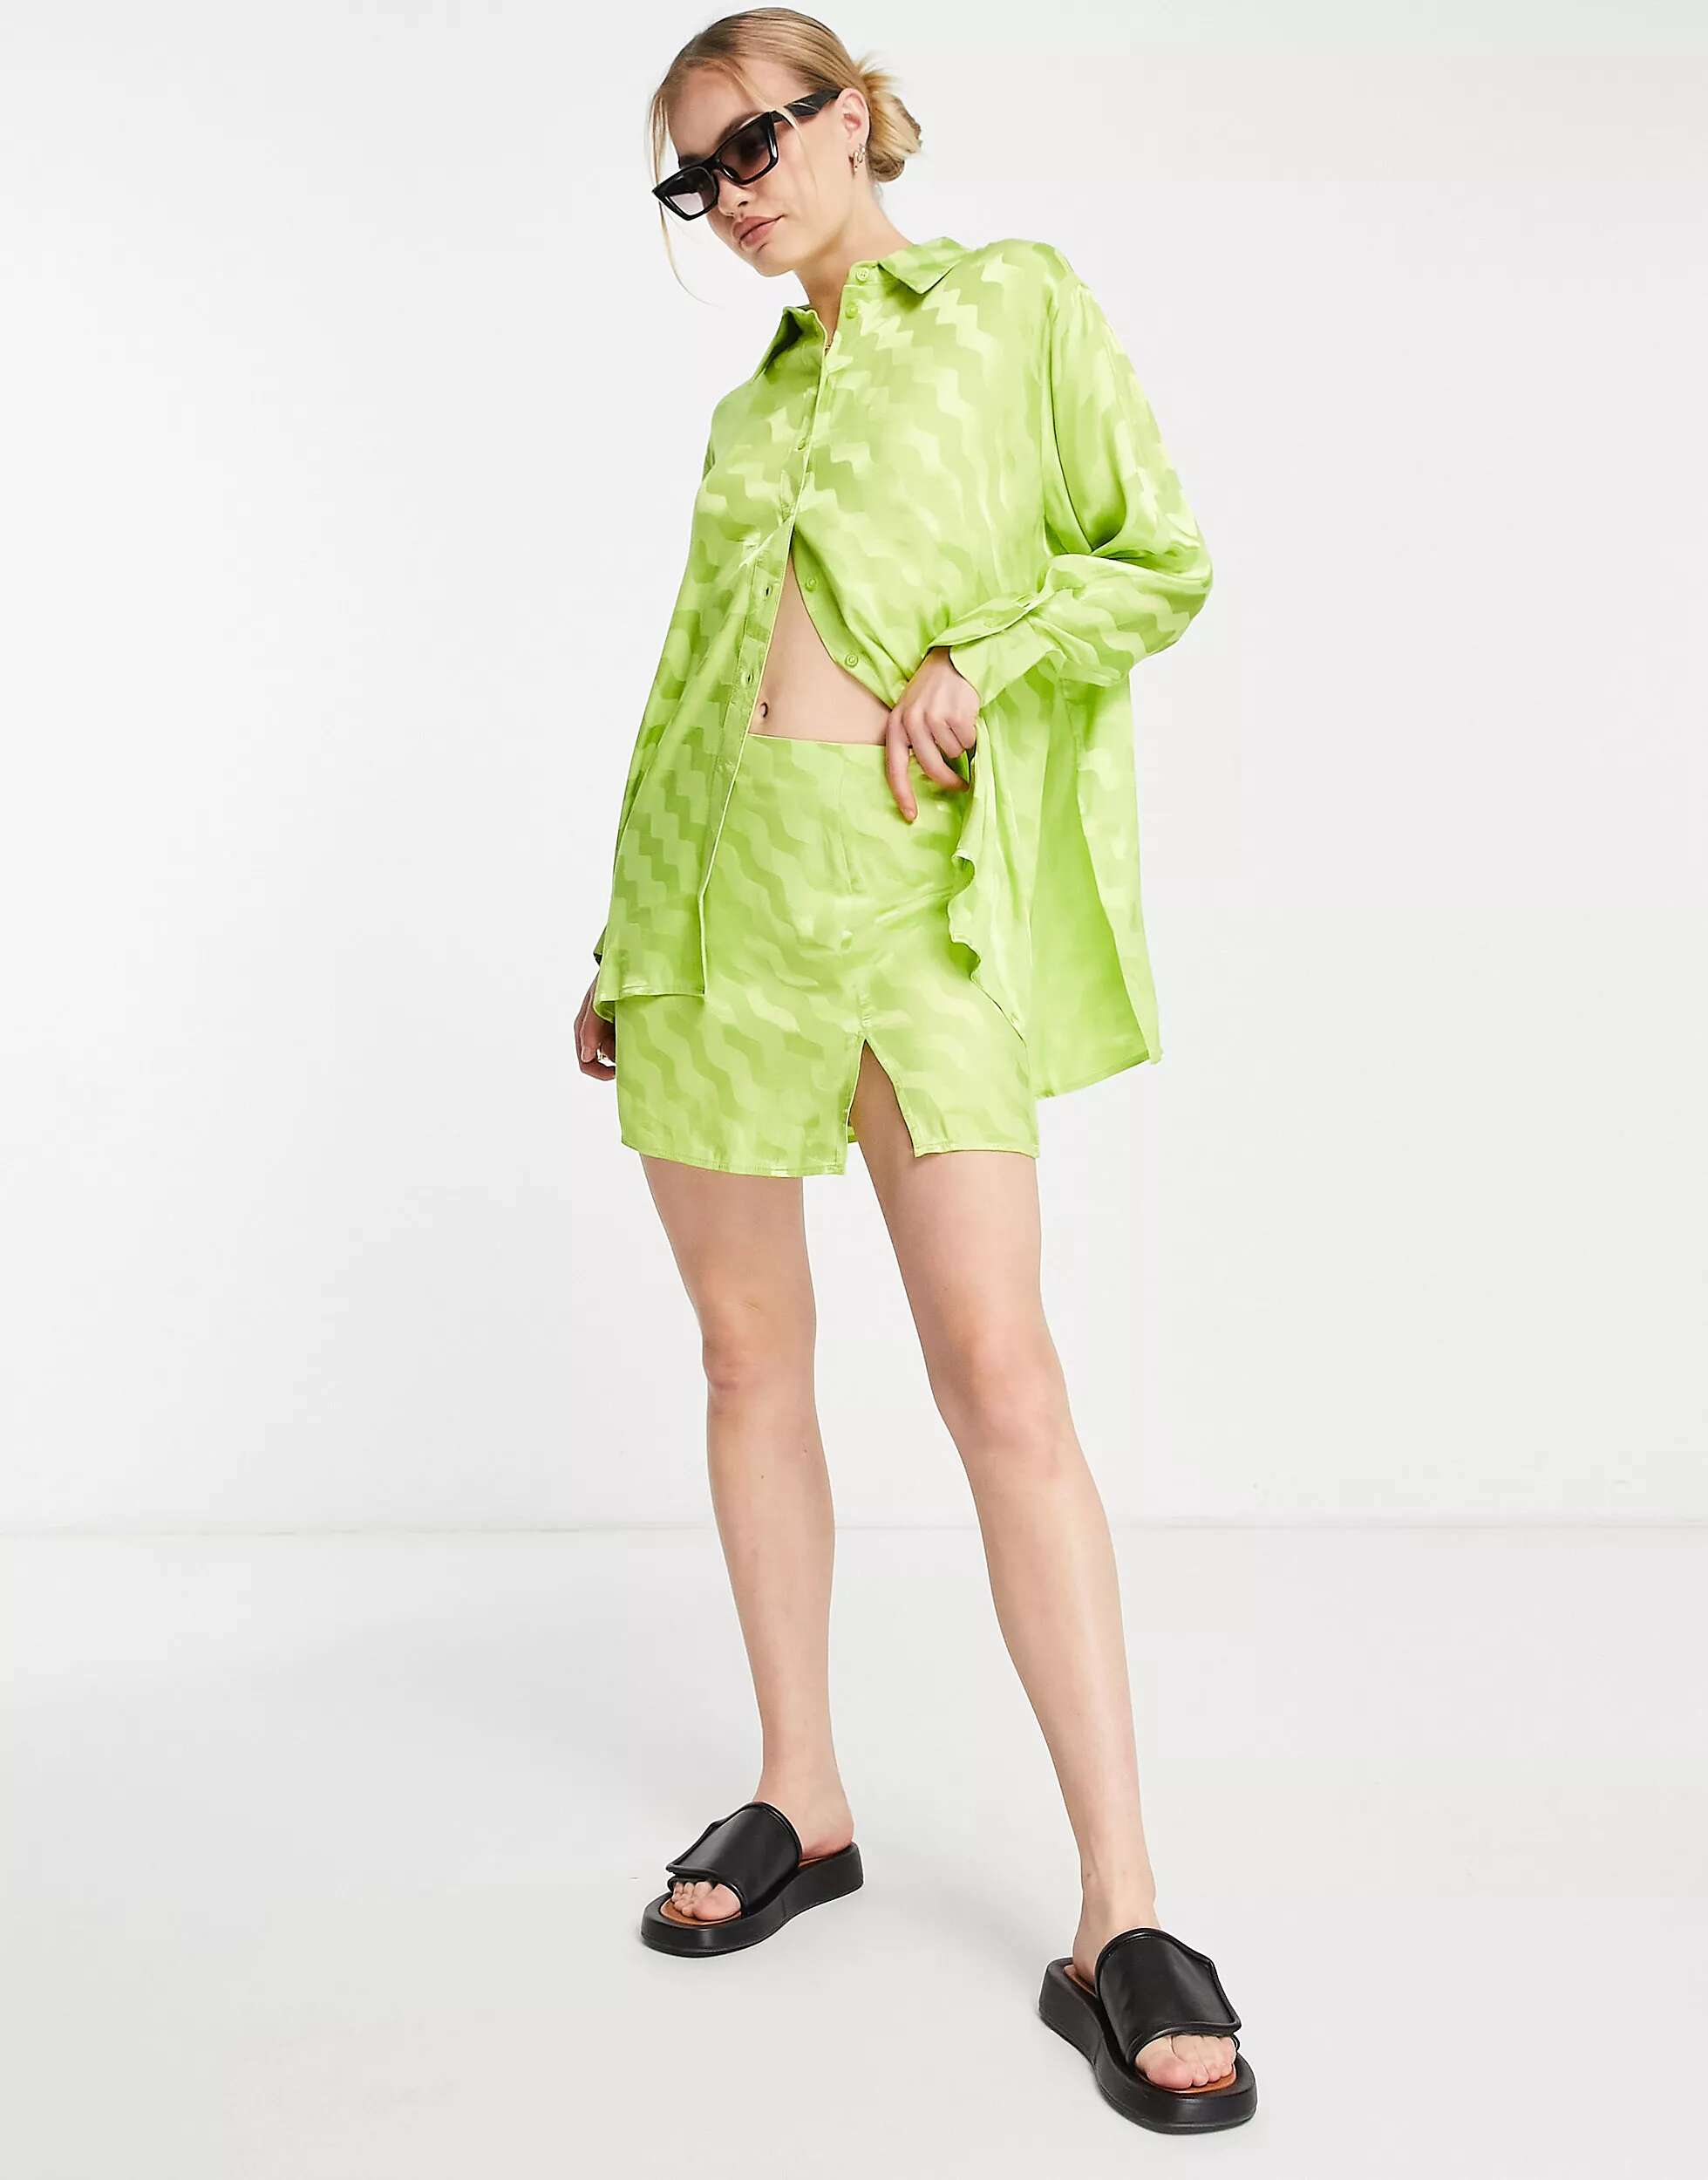 Жаккардовая мини-юбка Topshop цвета зеленовато-желтого цвета